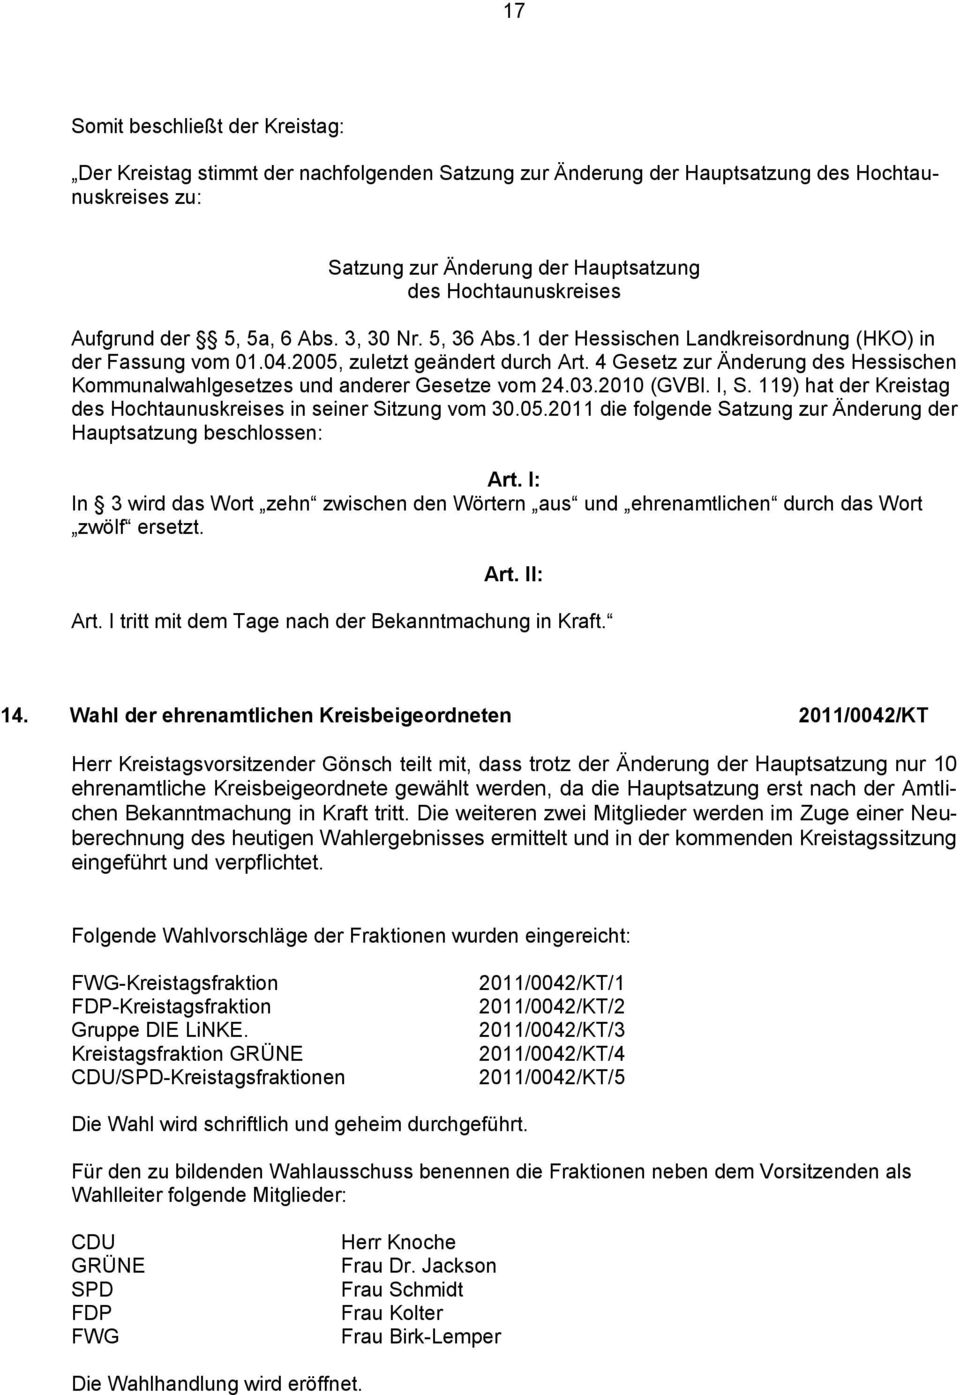 4 Gesetz zur Änderung des Hessischen Kommunalwahlgesetzes und anderer Gesetze vom 24.03.2010 (GVBl. I, S. 119) hat der Kreistag des Hochtaunuskreises in seiner Sitzung vom 30.05.